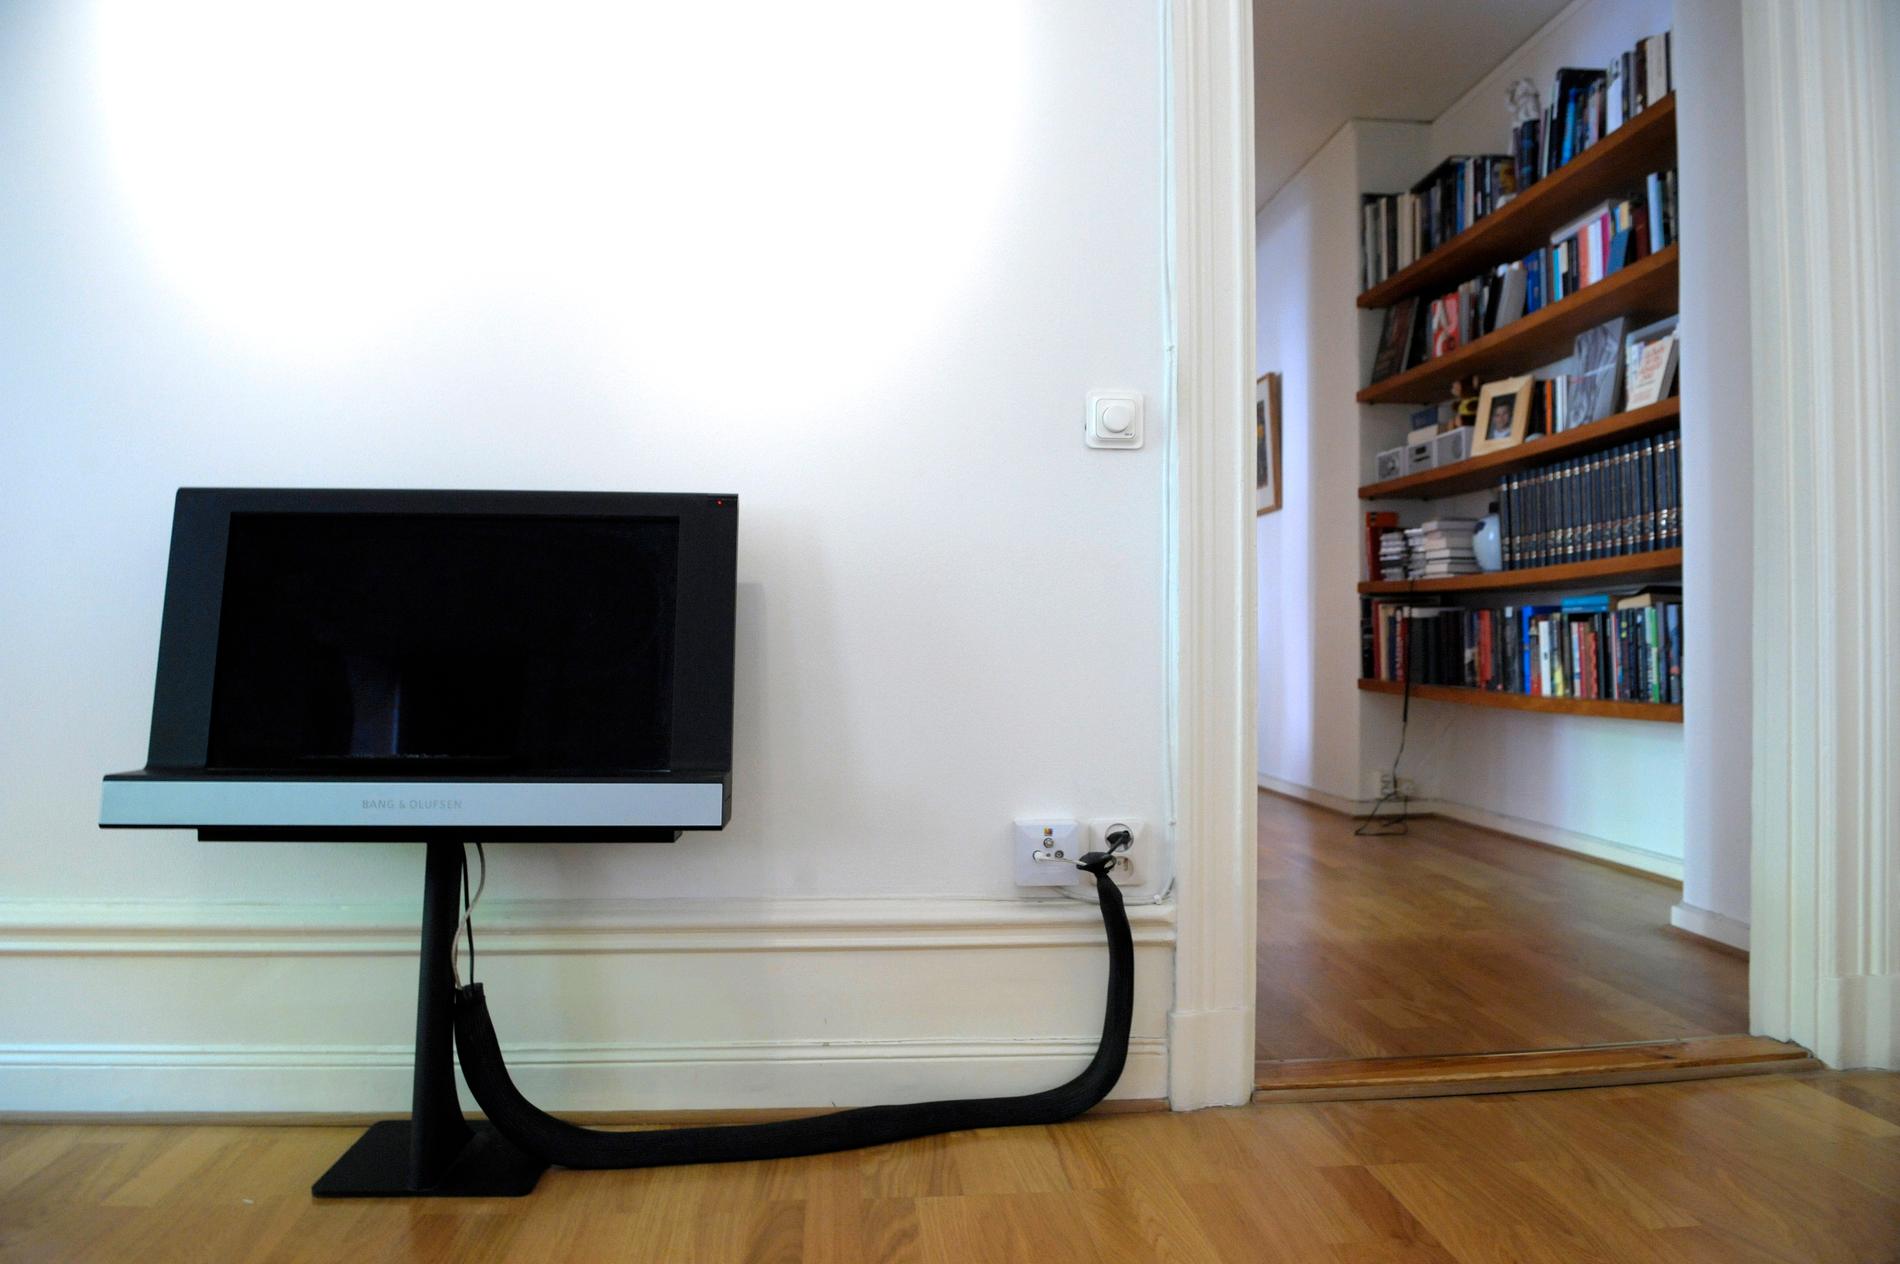 En tv-apparat från Bang & Olufsen. Arkivbild